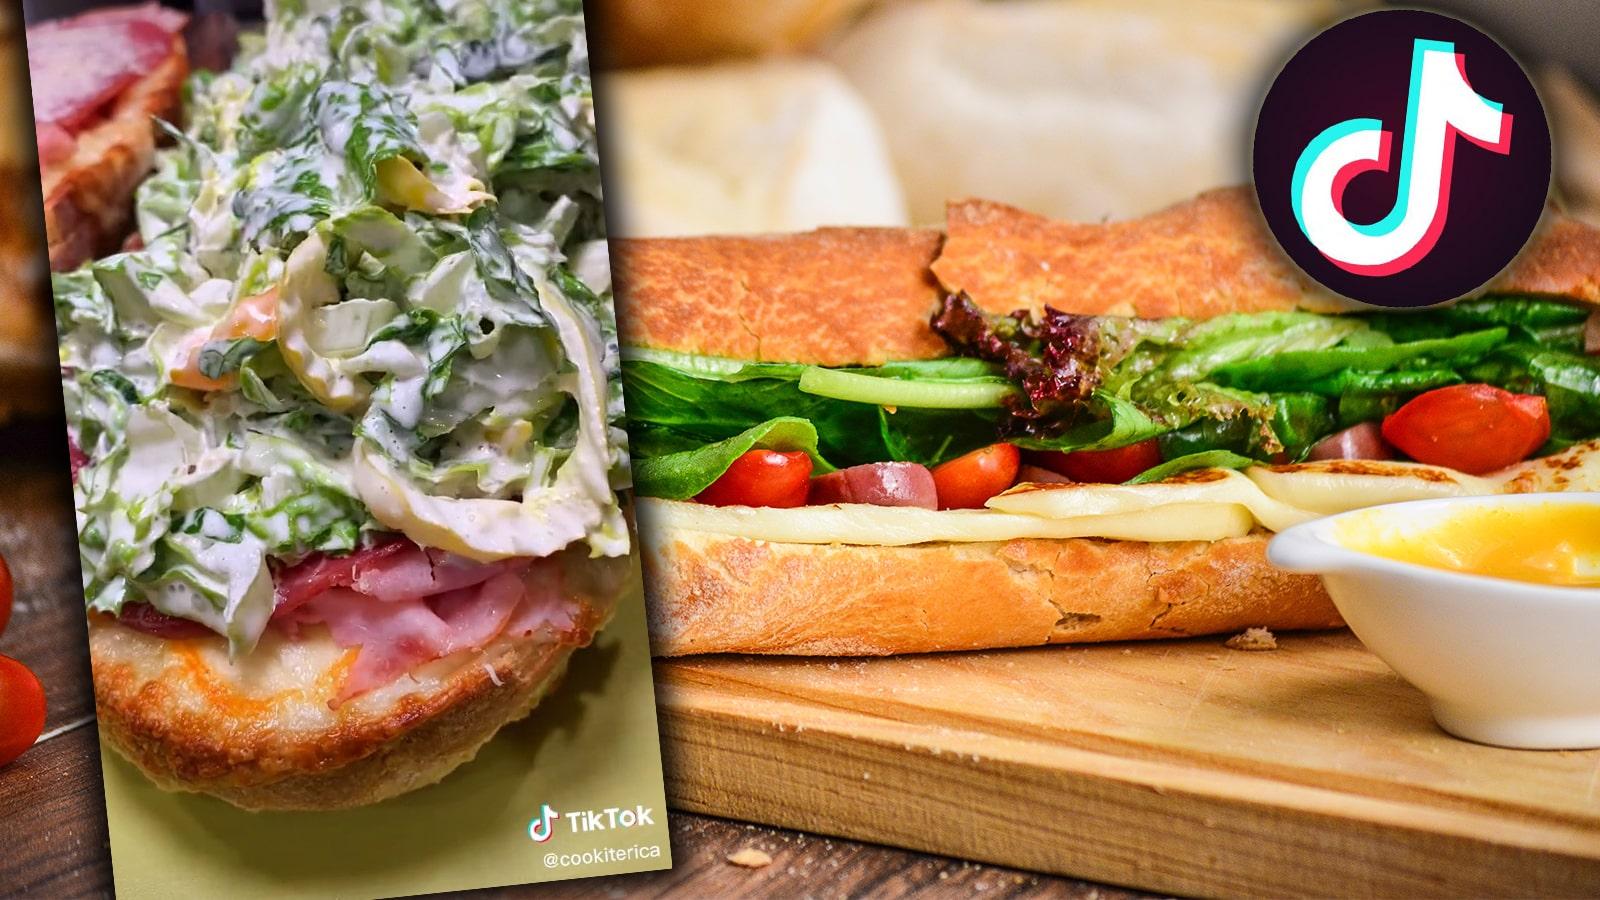 What is tiktok's viral grinder sandwich